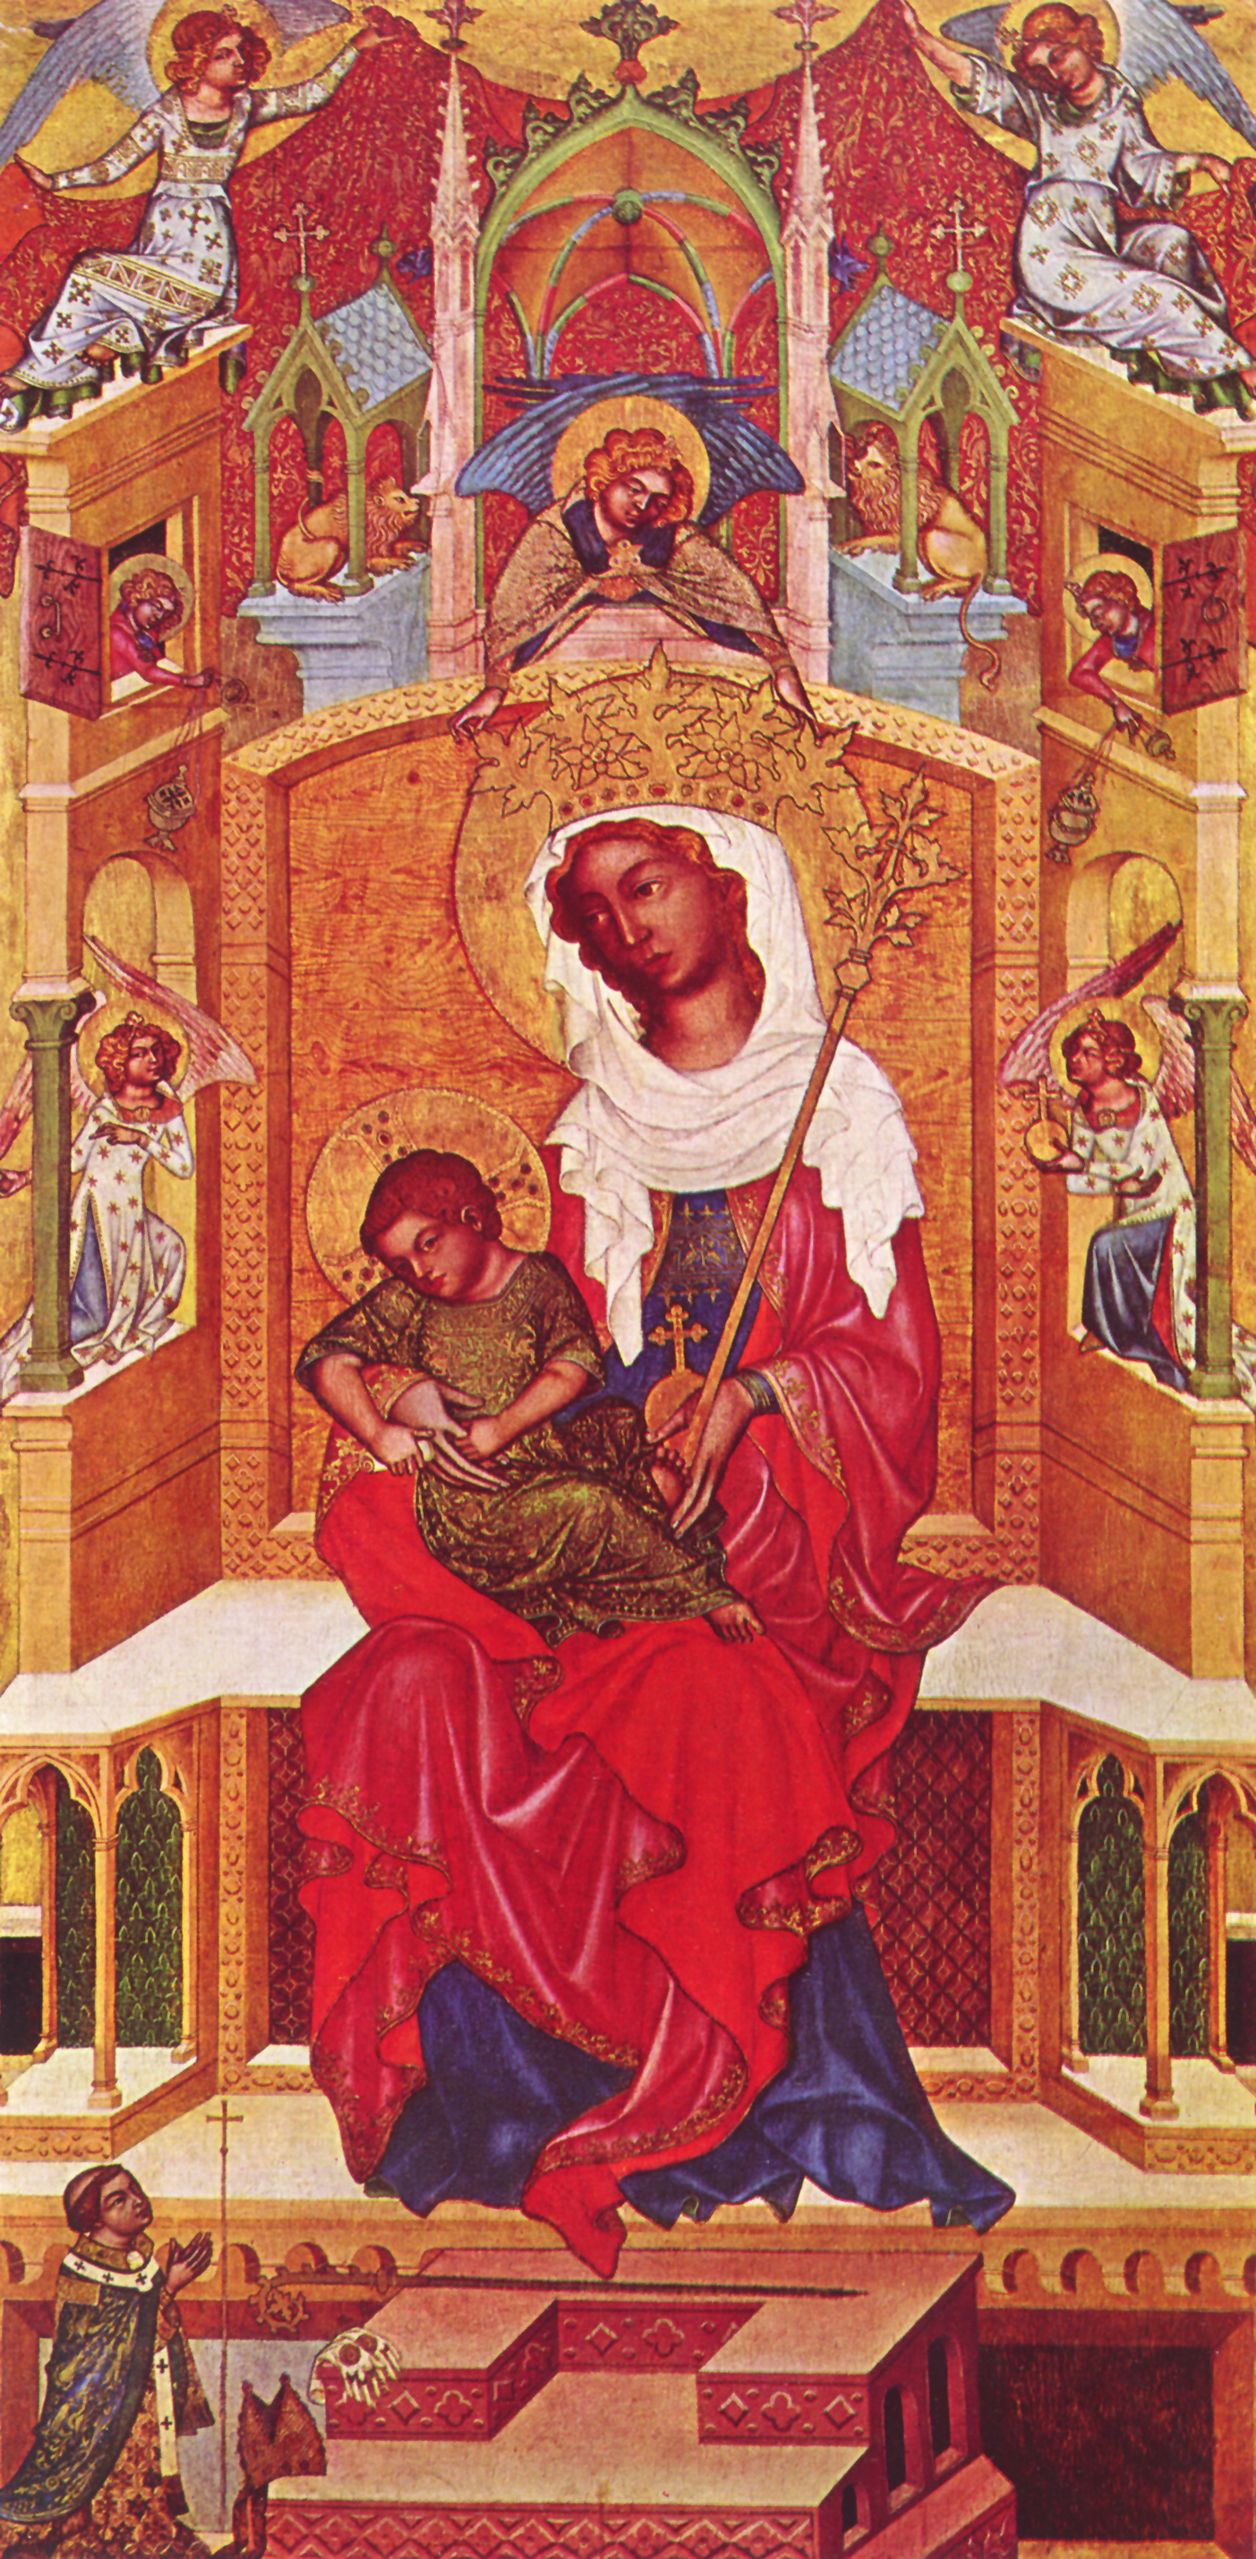 Bhmischer Meister: Glatzer Madonna, Szene: Thronende Maria mit Kind